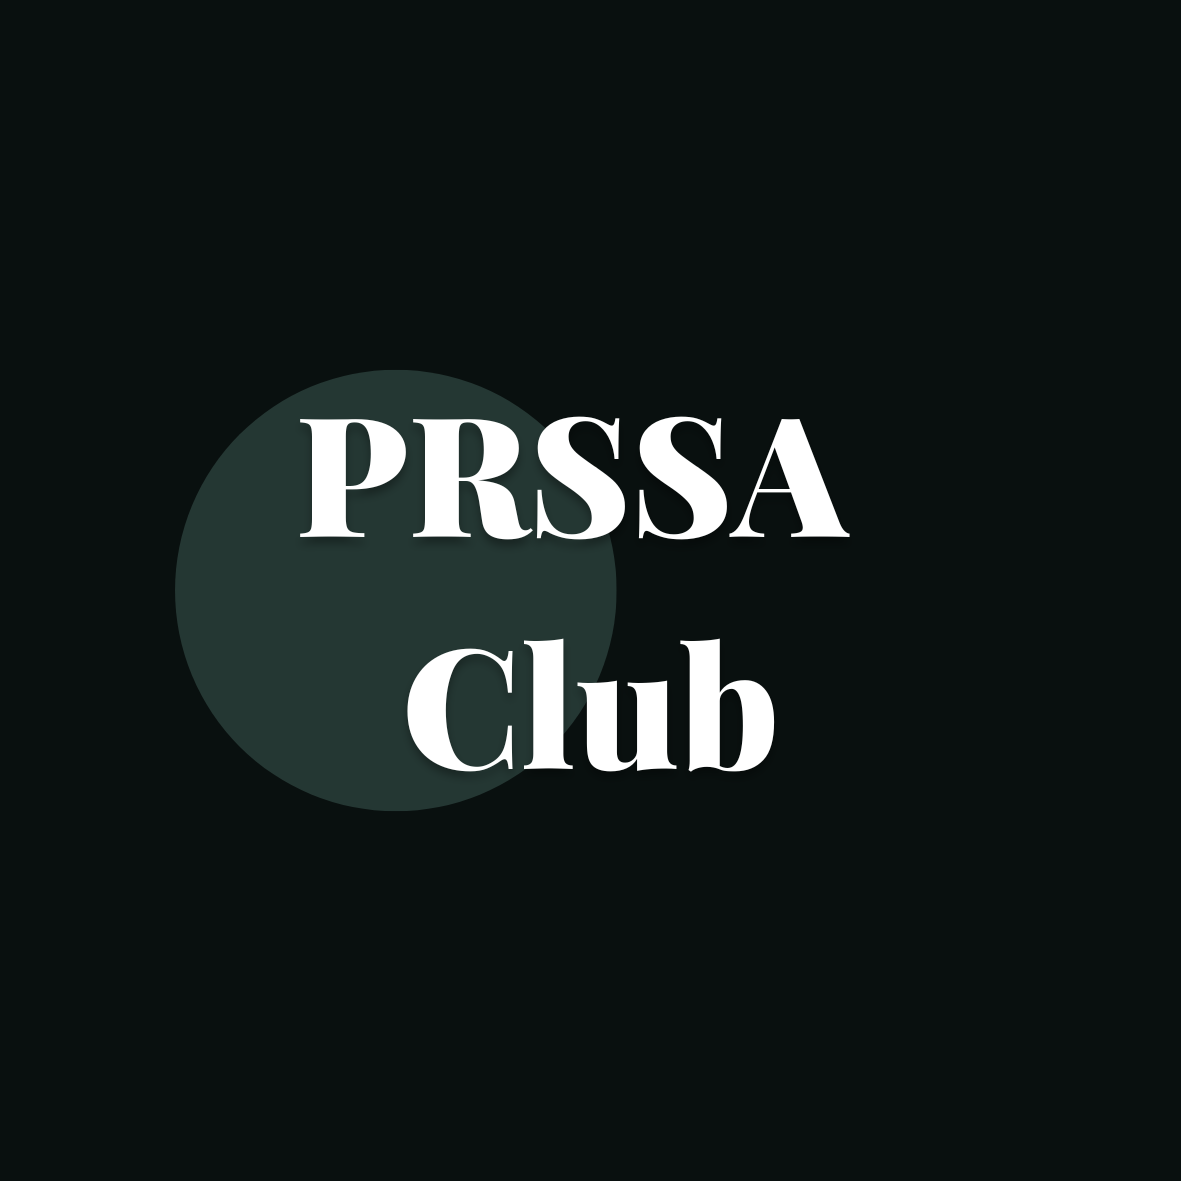 PRSSA Club